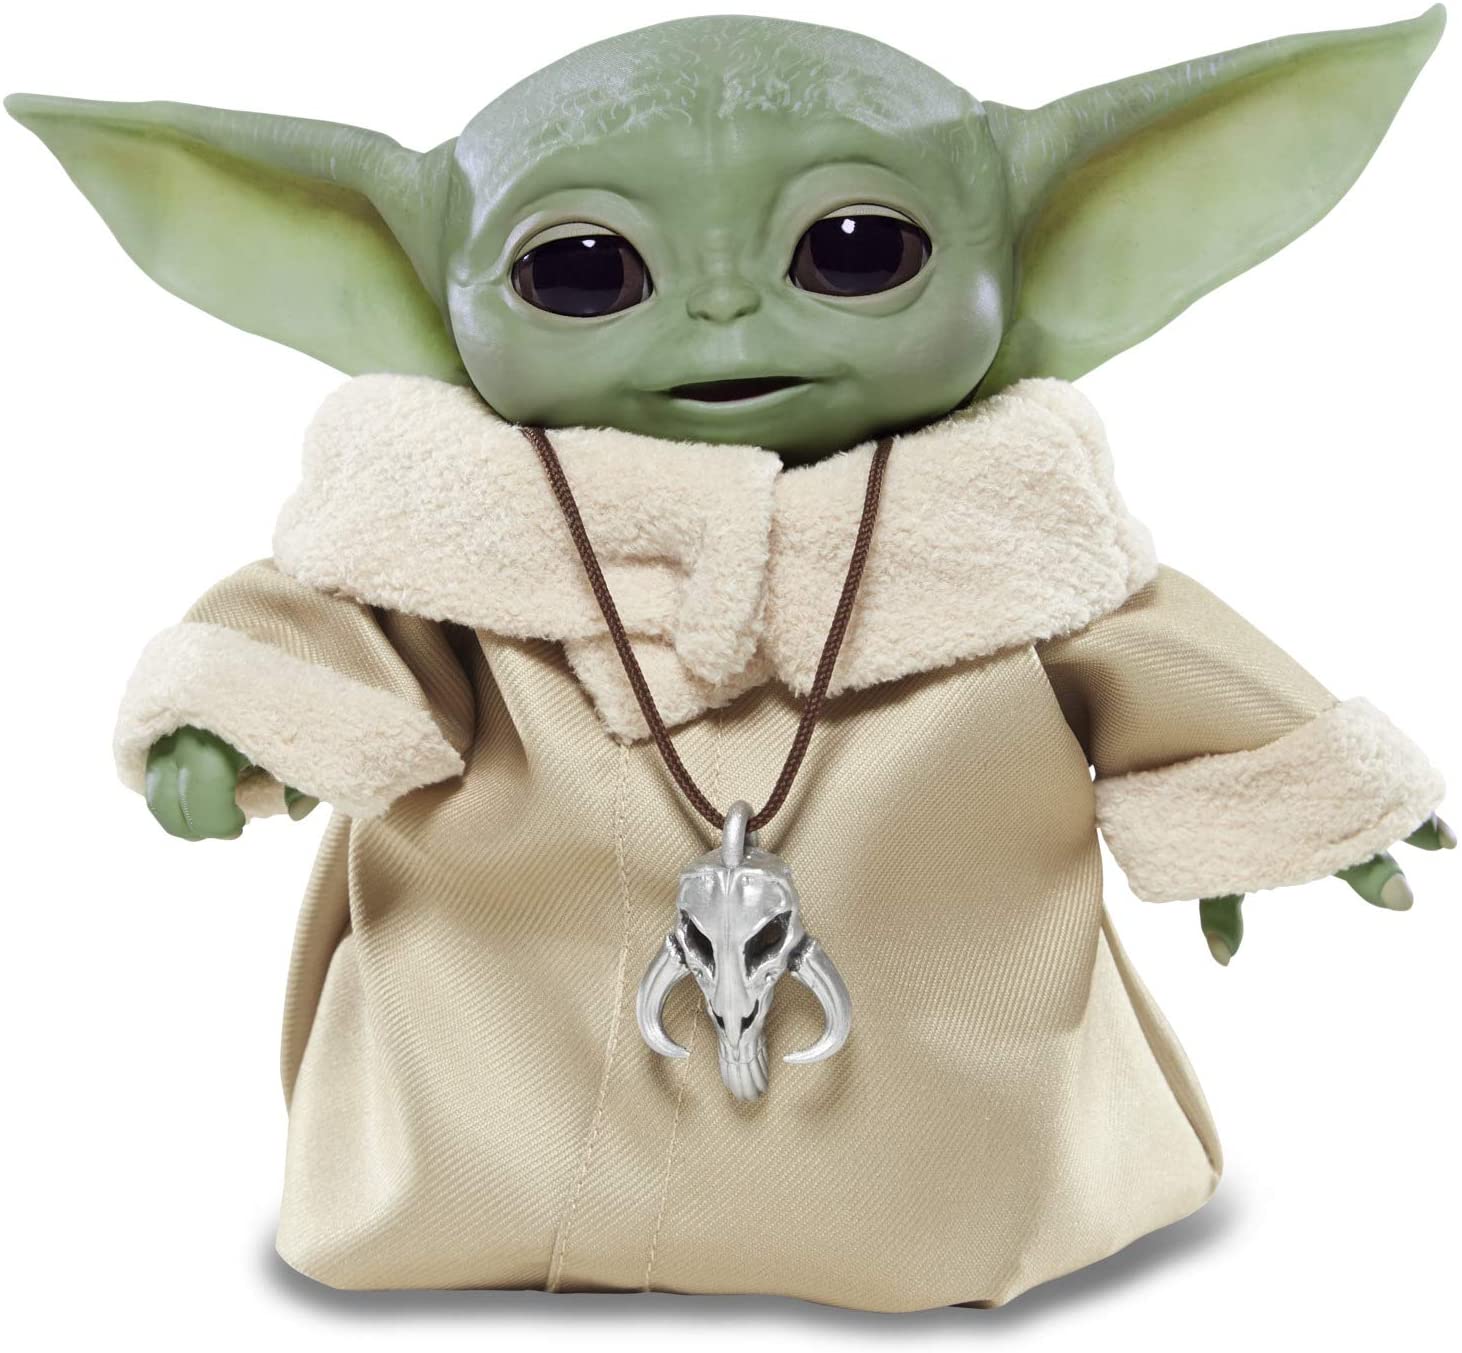 Idee regalo Natale 2020 dedicate a chi ama Baby Yoda. E chi non lo ama